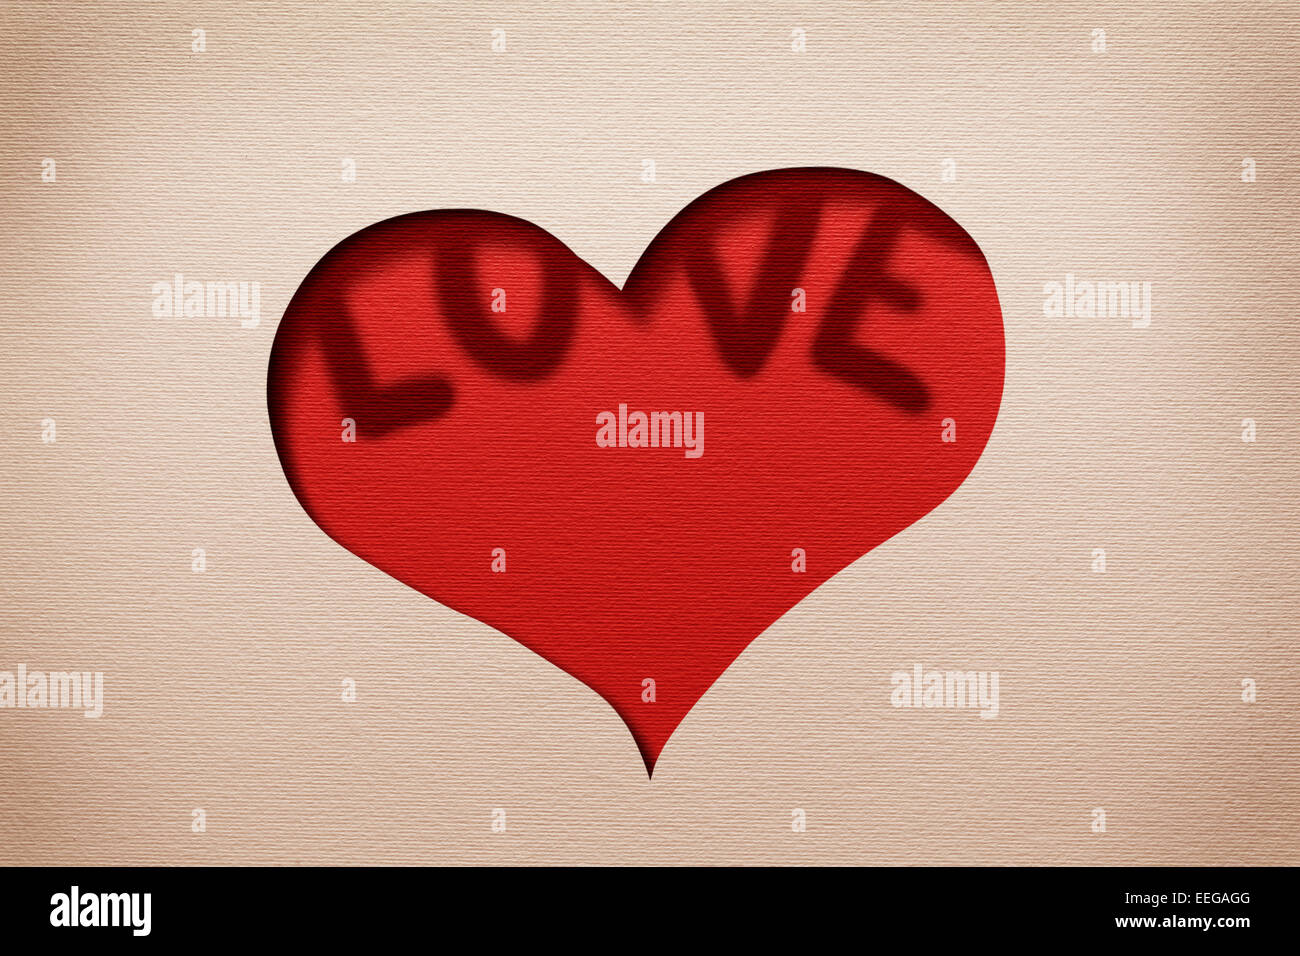 Cuore nella sfinestratura della carta con la parola 'amore' all'interno.Card design. Foto Stock